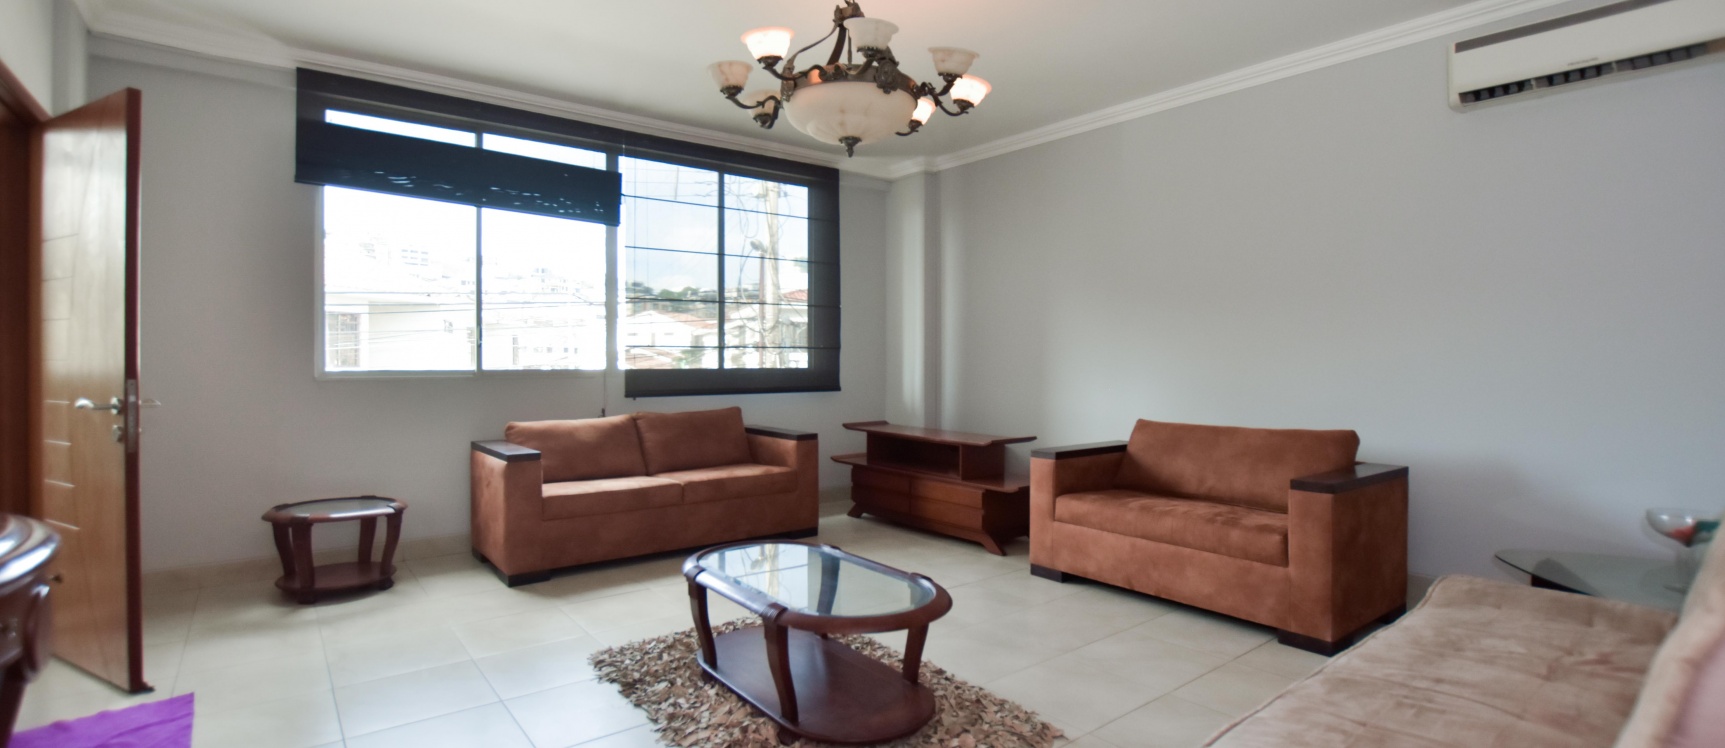 GeoBienes - Departamento amoblado en alquiler ubicado en Santa Cecilia - Plusvalia Guayaquil Casas de venta y alquiler Inmobiliaria Ecuador